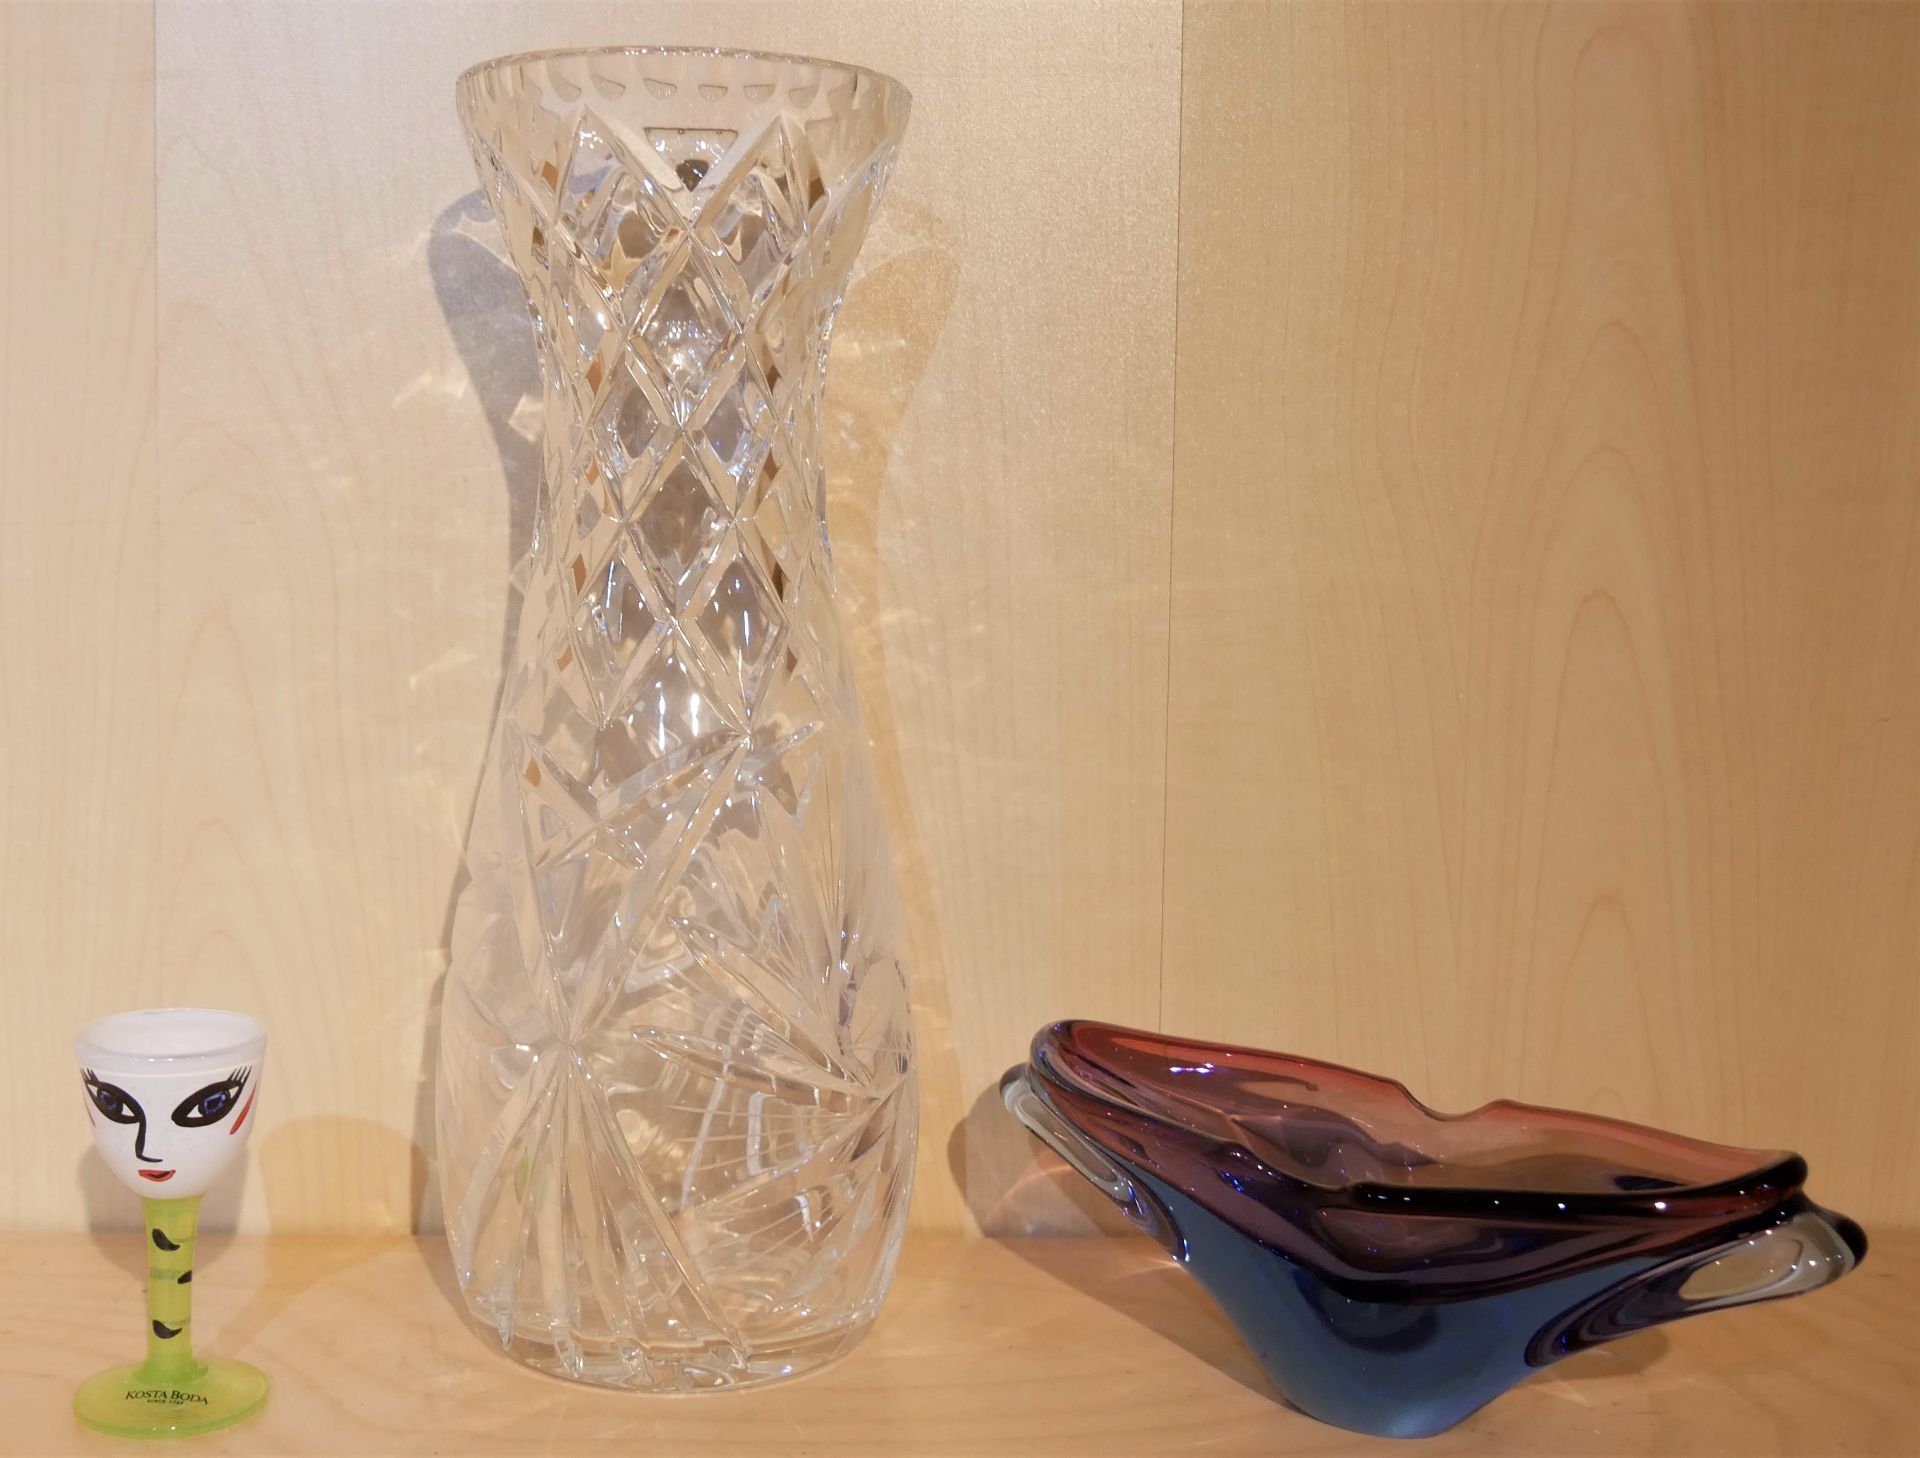 Lot Glas aus Auflösung, dabei 1 Likörglas von Kosta Boda, eine Glasschale blau/rosa, Länge ca. 22 cm